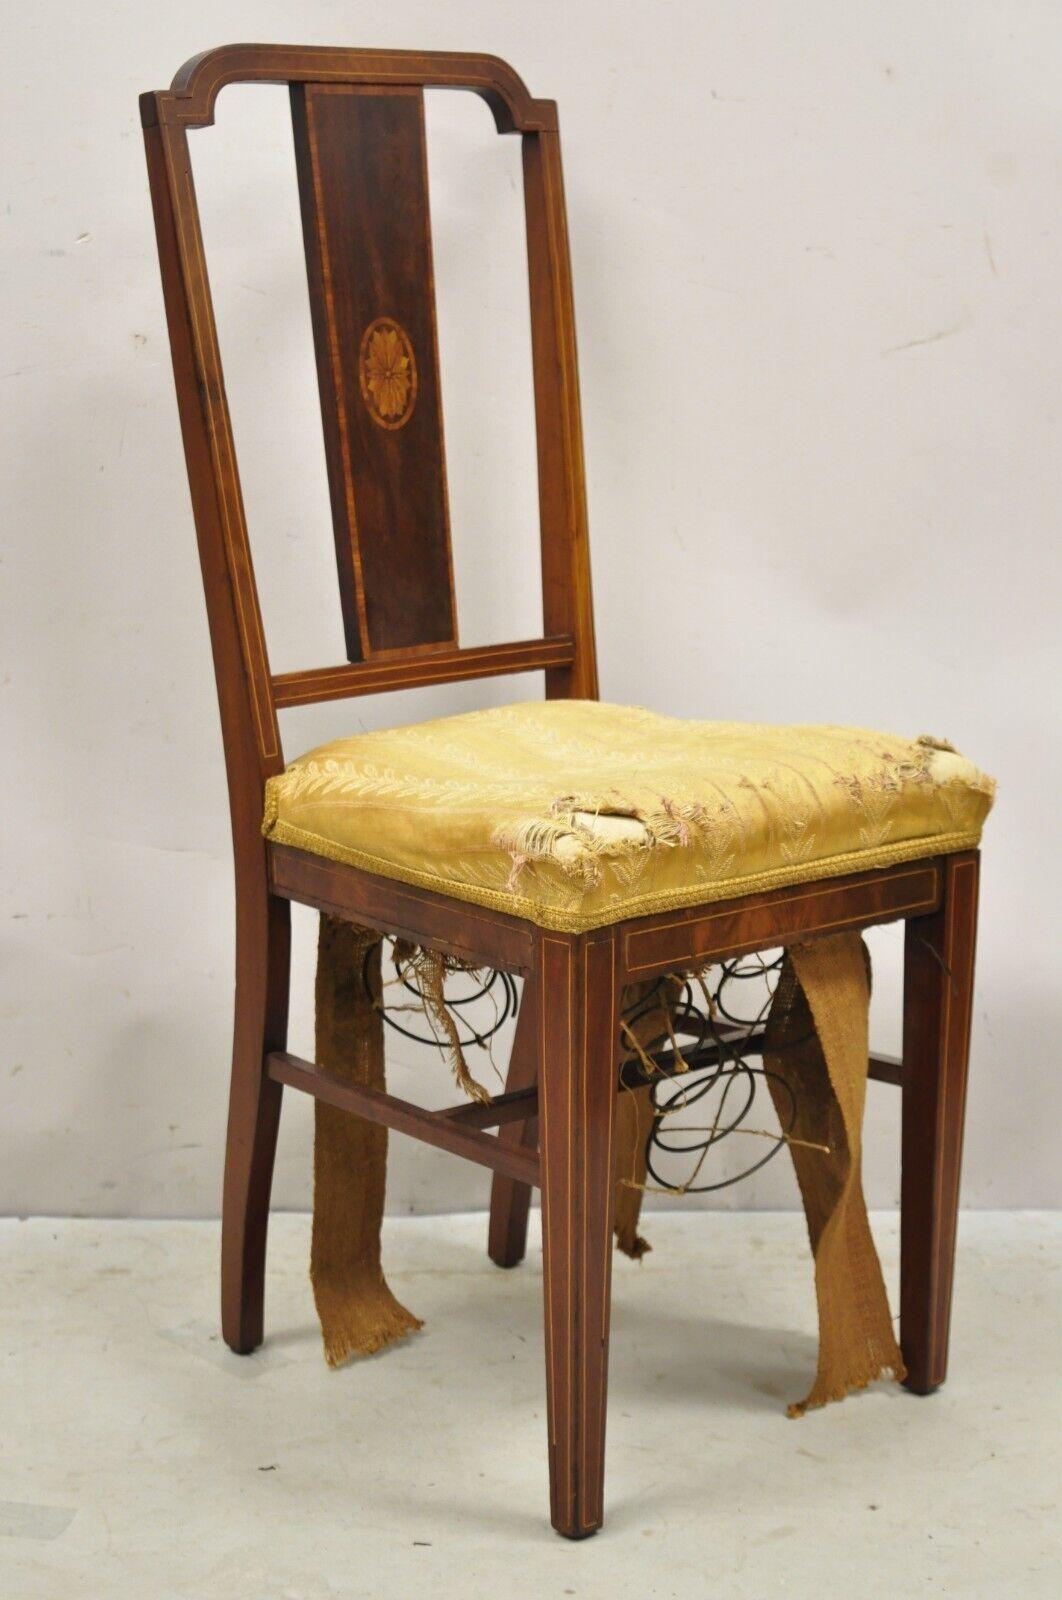 Antiker Edwardianischer Mahagoni Beistellstuhl mit Bleistift und Pinwheel Intarsien. Artikel verfügt über einen Massivholzrahmen, schöne Holzmaserung, schöne Intarsien, sehr schöne antike Element, großen Stil und Form. CIRCA frühe 1900er Jahre.